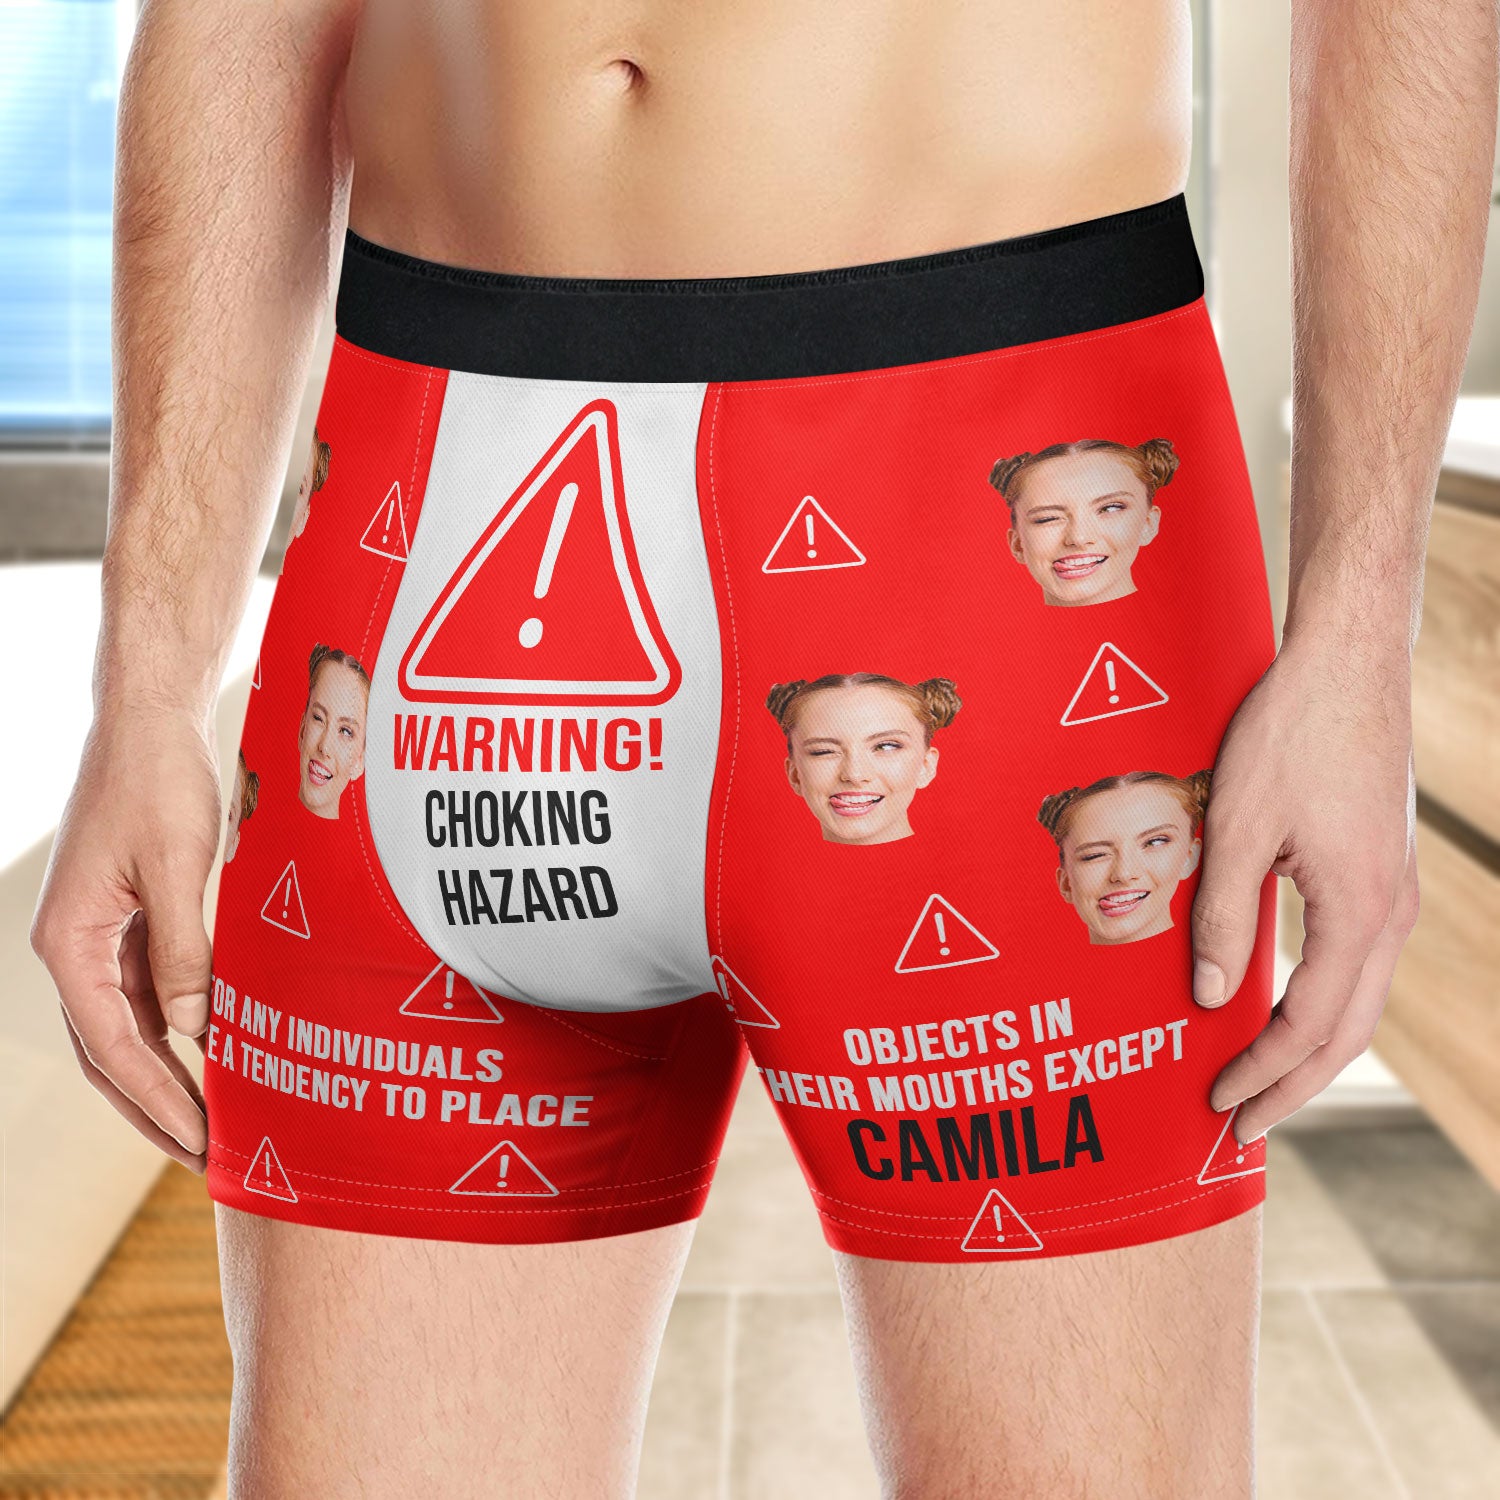 Random Stock Apparel Underwear CHOKING HAZARD Boxer Briefs Fun Novelty Gift